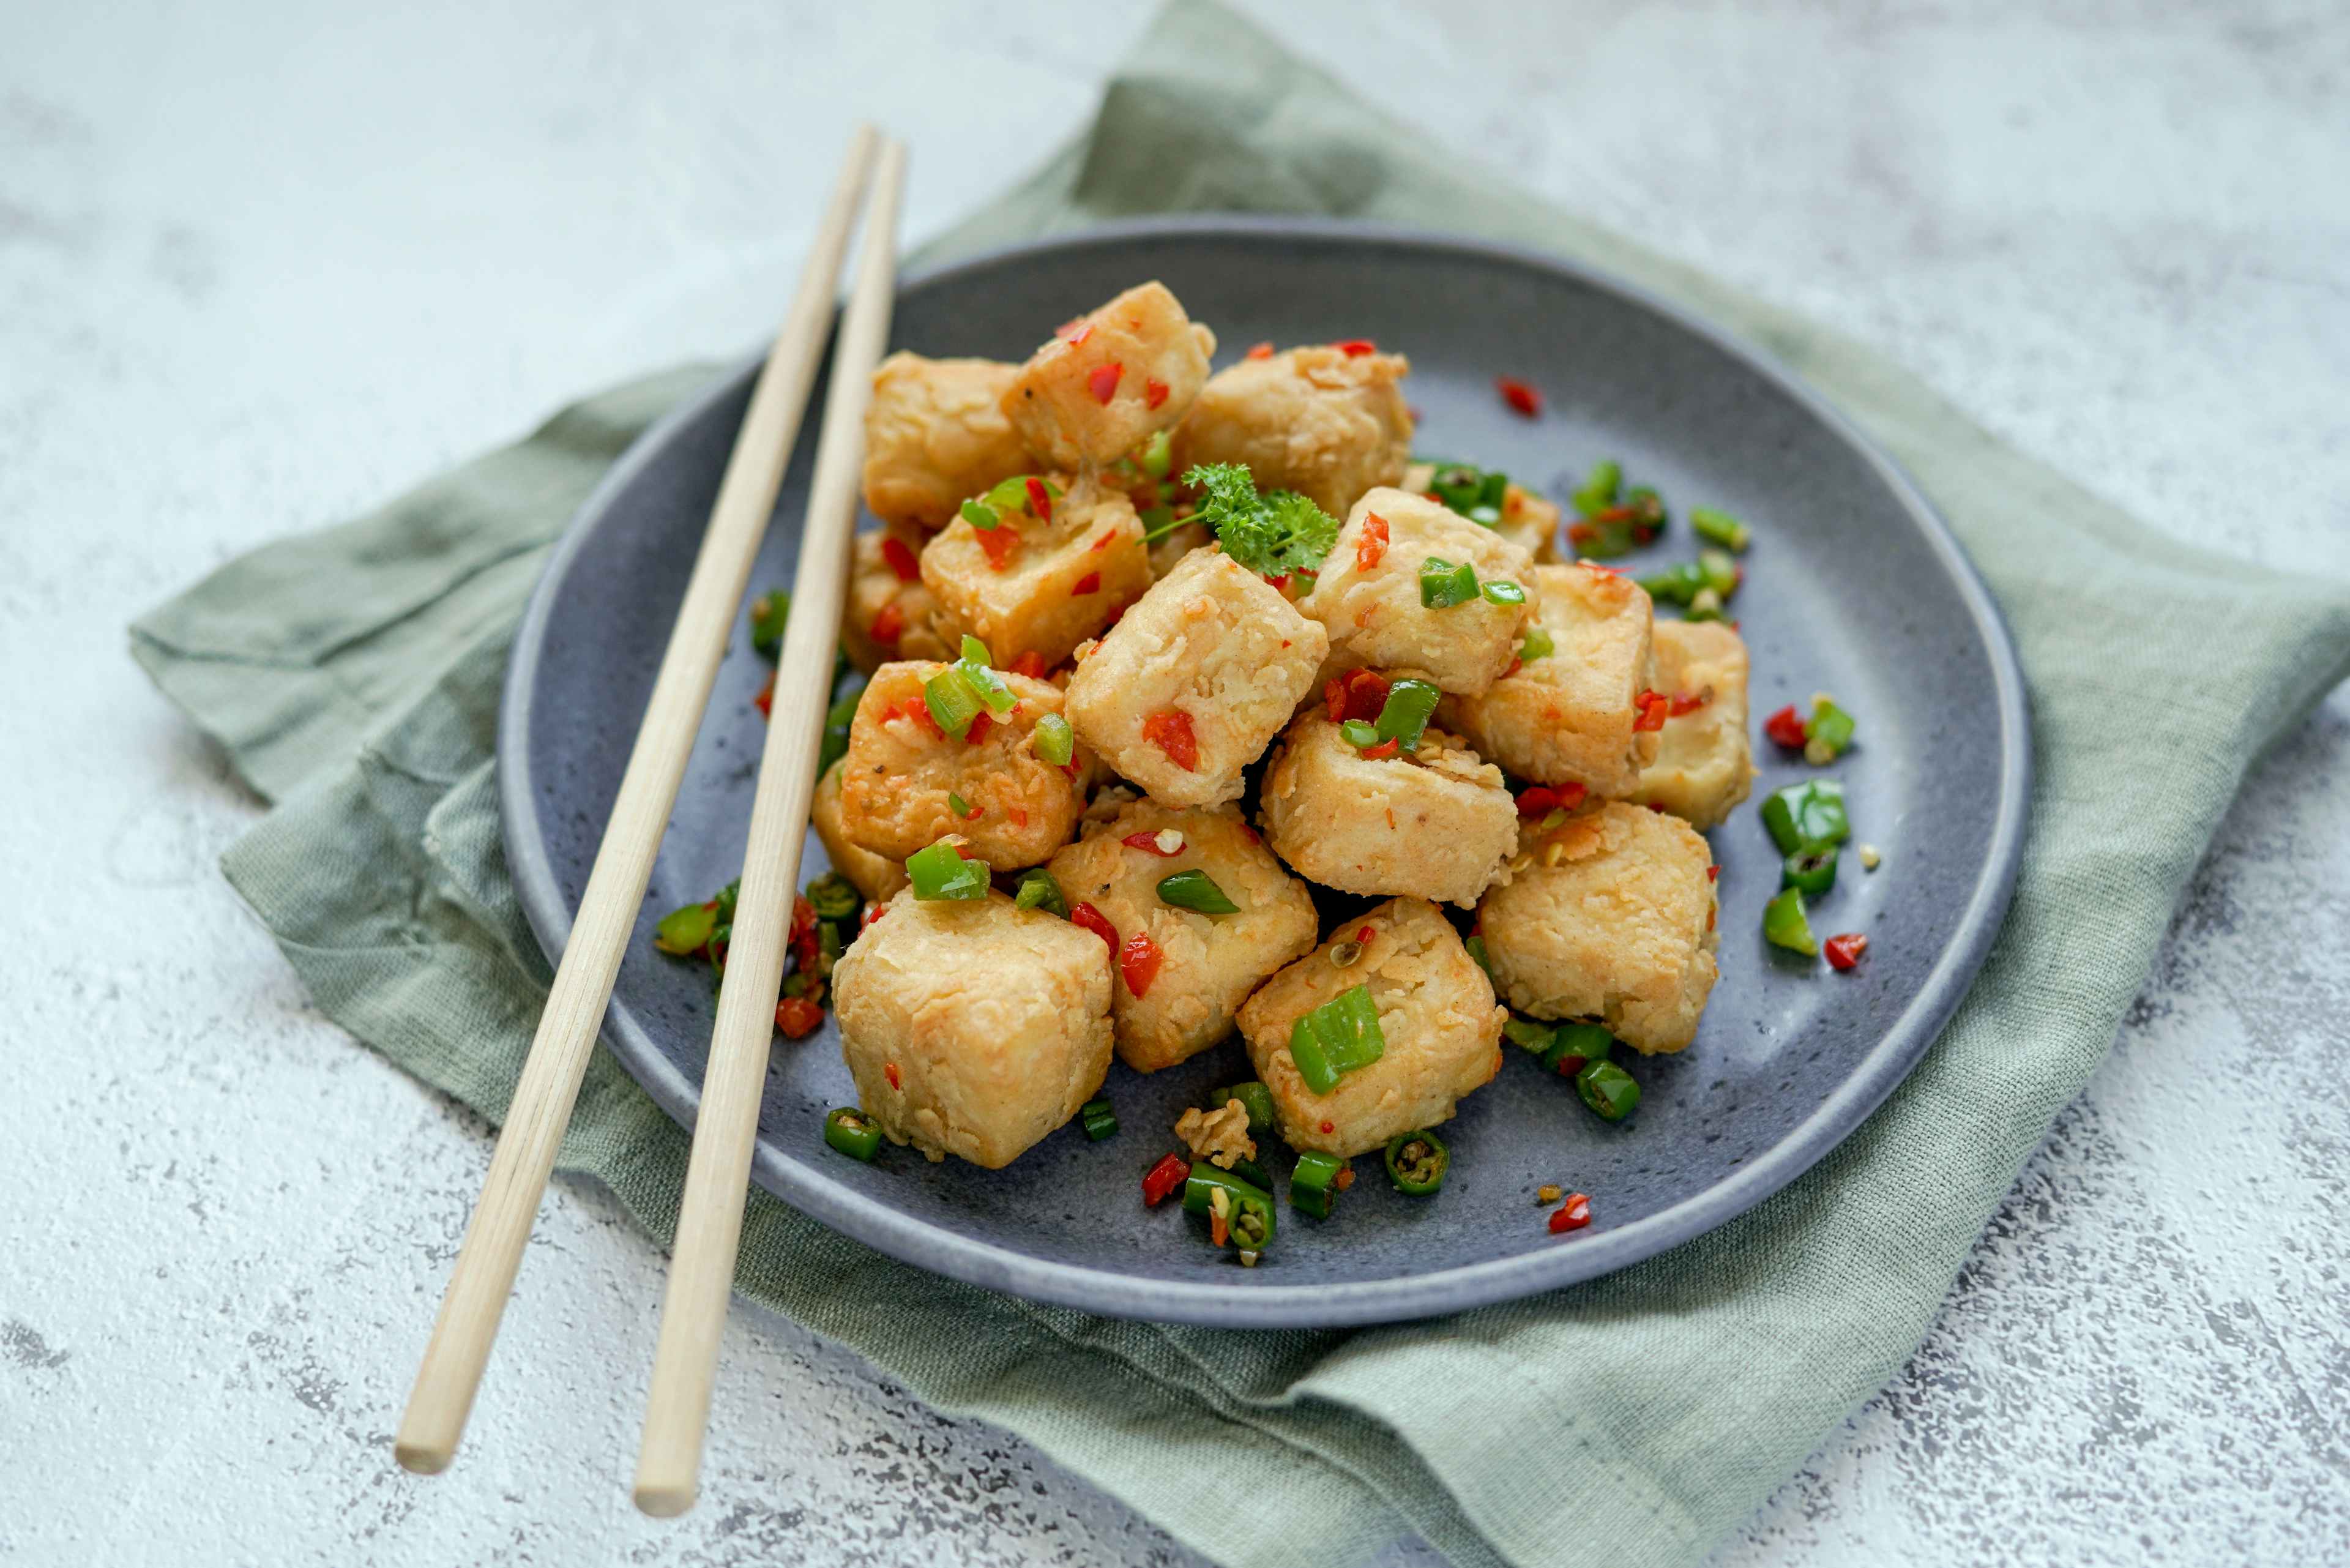 crispy tofu bites on a plate with chopsticks